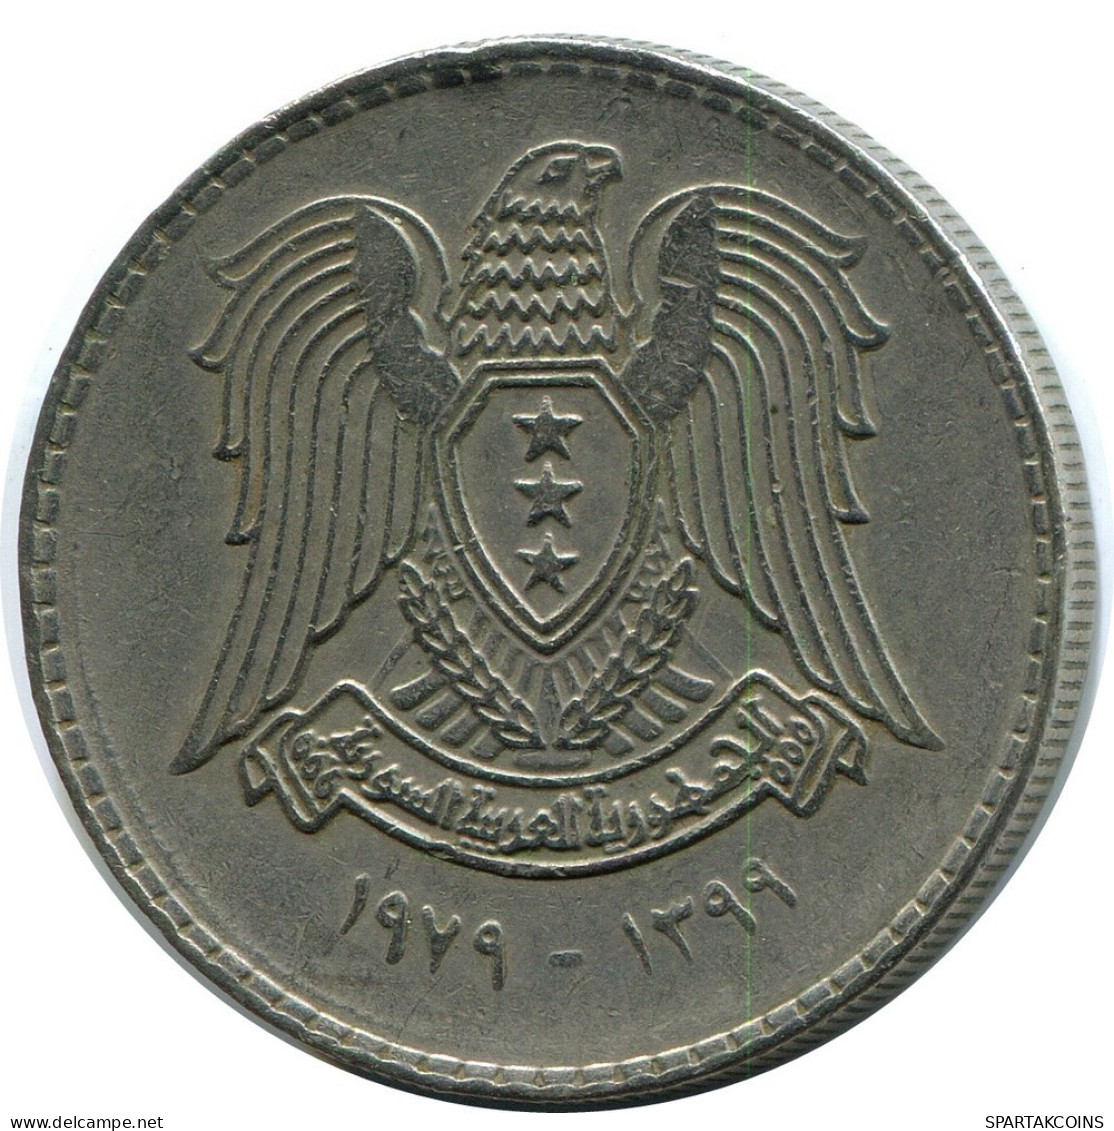 1 LIRA 1979 SYRIA Islamic Coin #AZ329.U.A - Siria